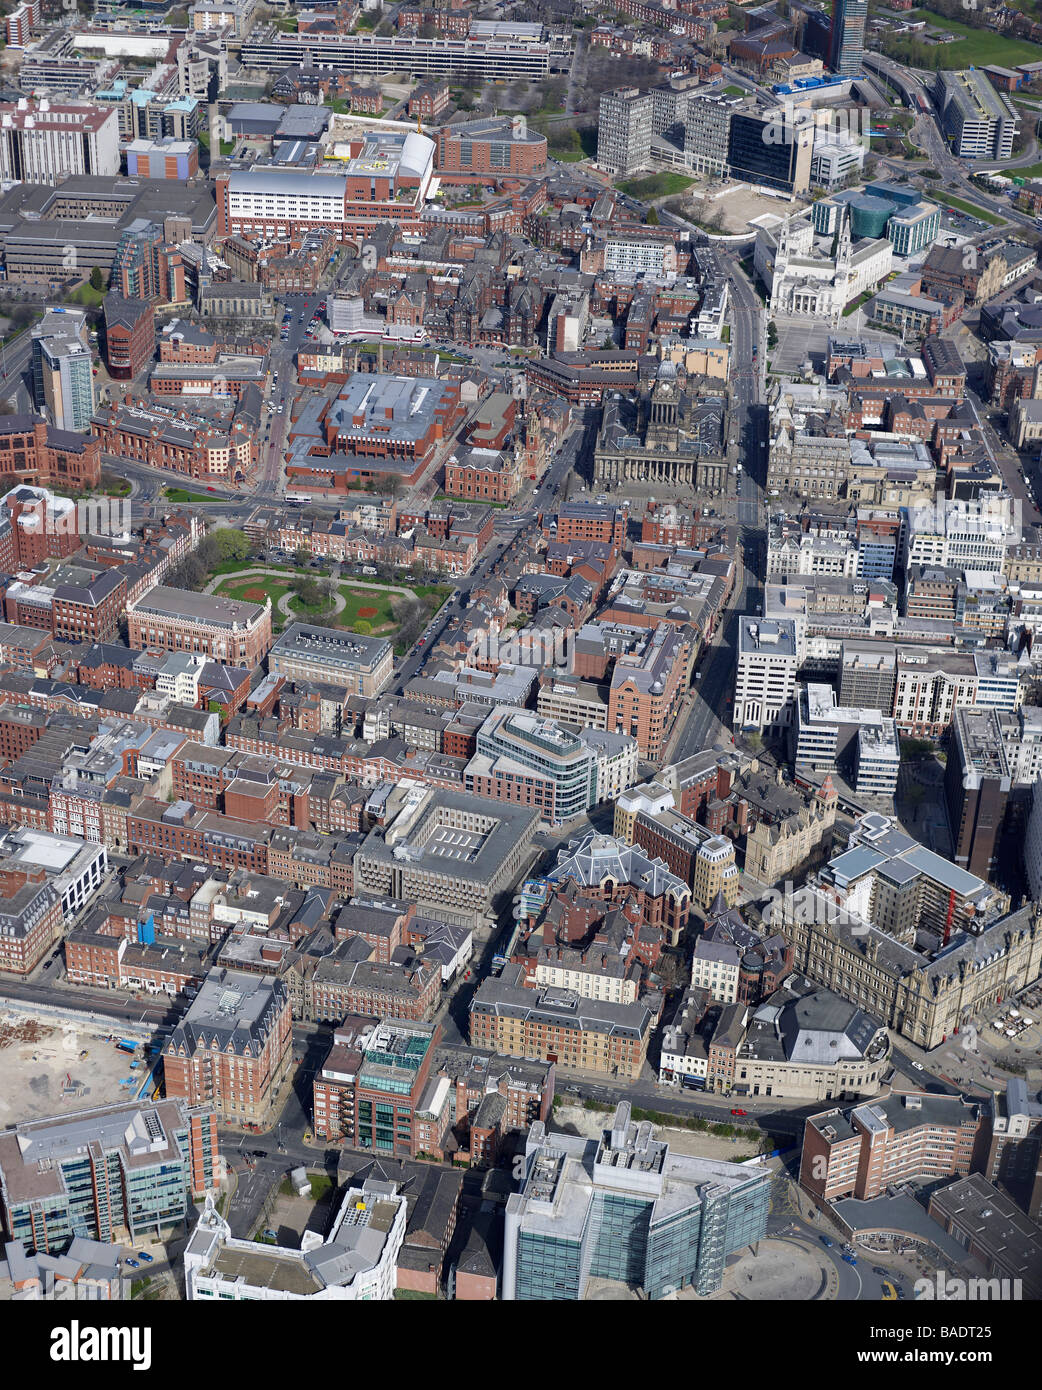 Vue aérienne du centre-ville de Leeds, 2009, le nord de l'Angleterre Banque D'Images